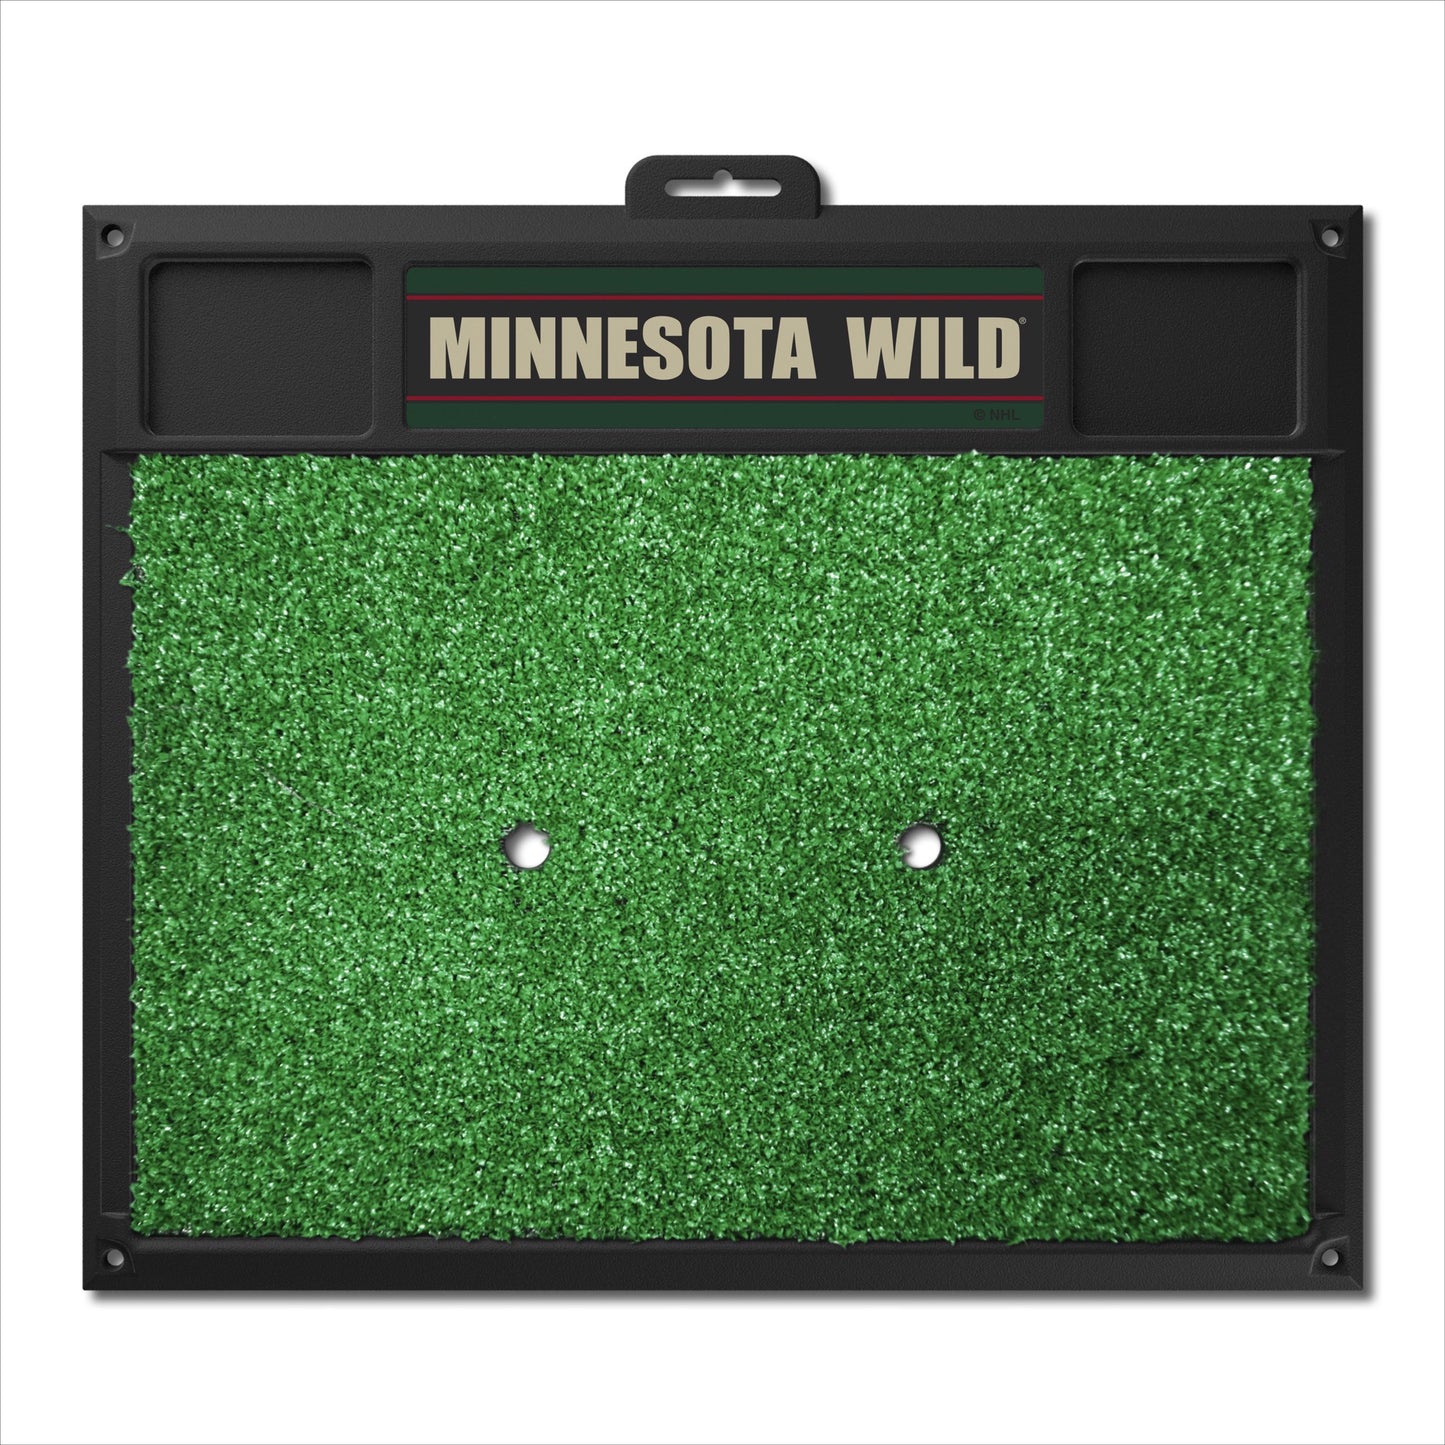 Minnesota Wild Golf Hitting Mat by Fanmats